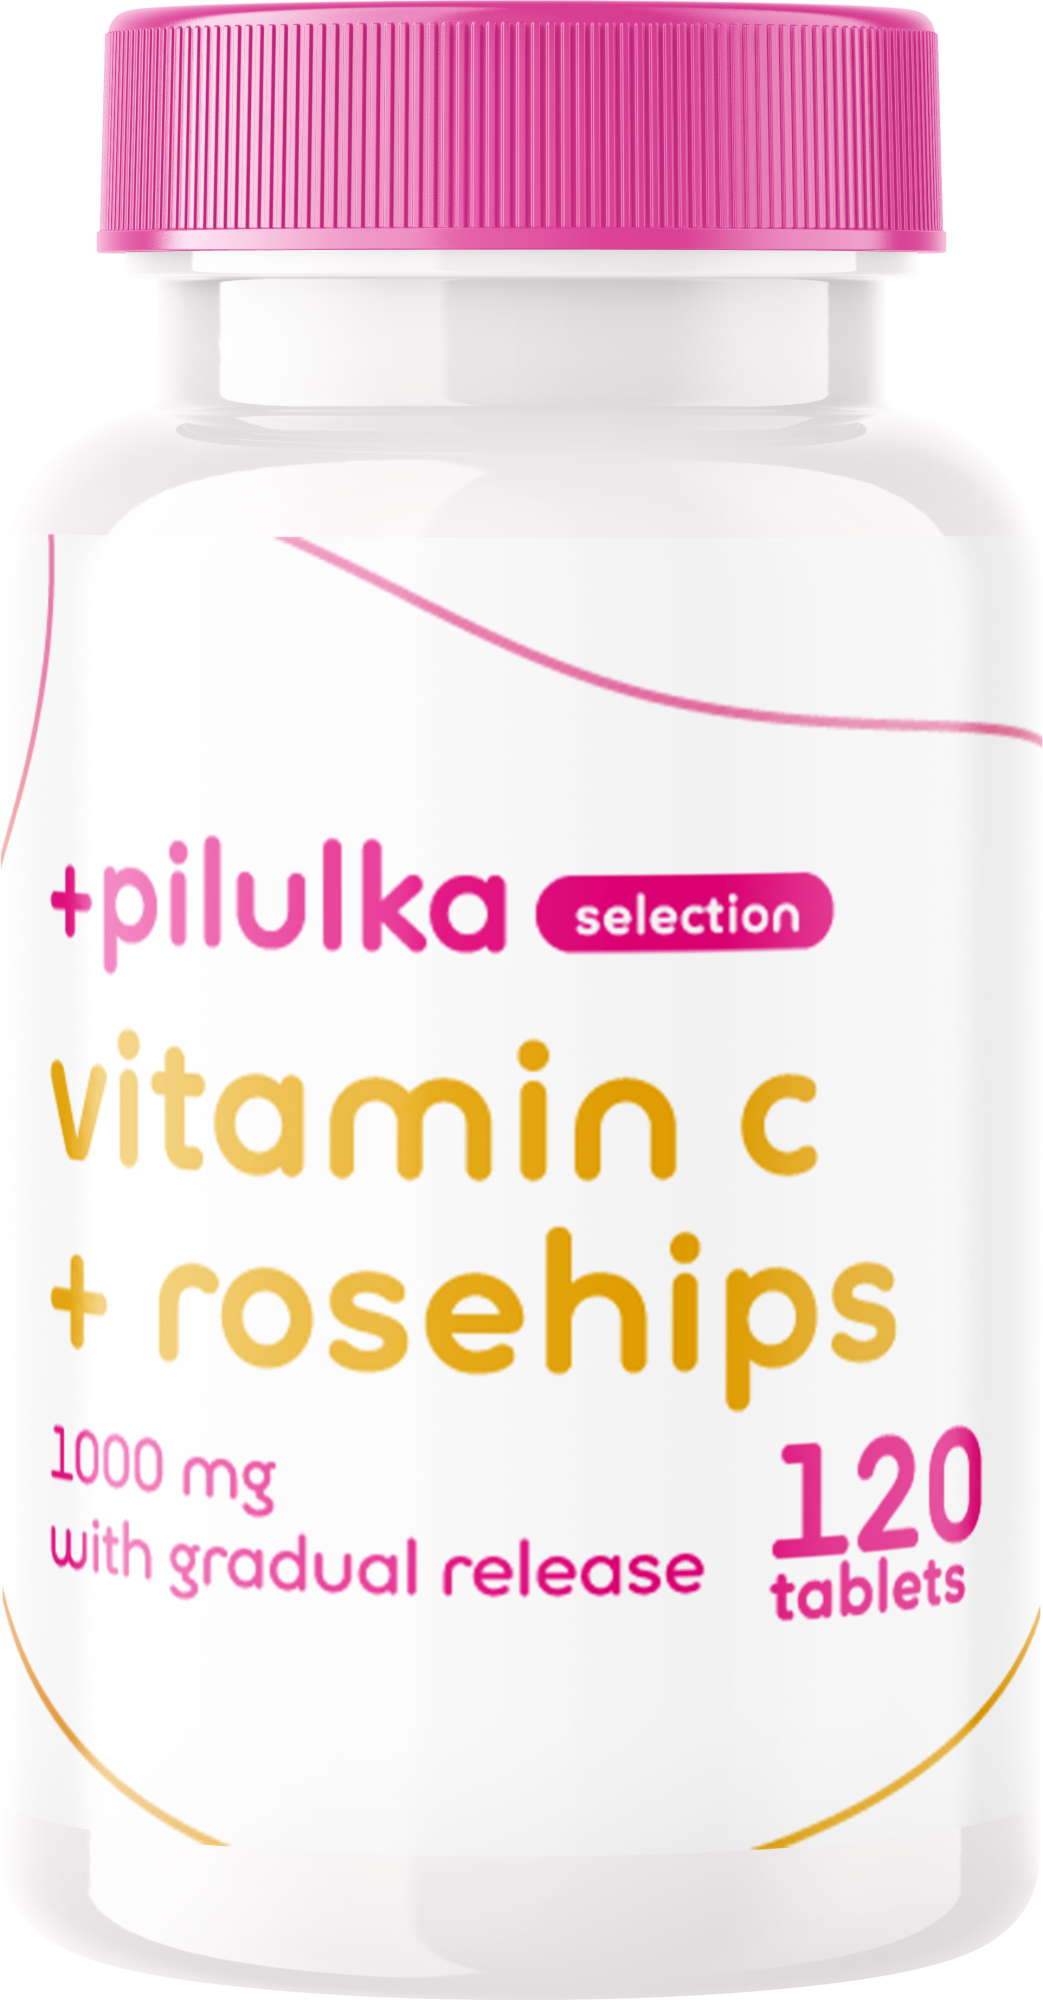 Pilulka Selection 1000 mg C-vitamin fokozatosan felszabaduló csipkebogyó-kivonattal 120 tabletta